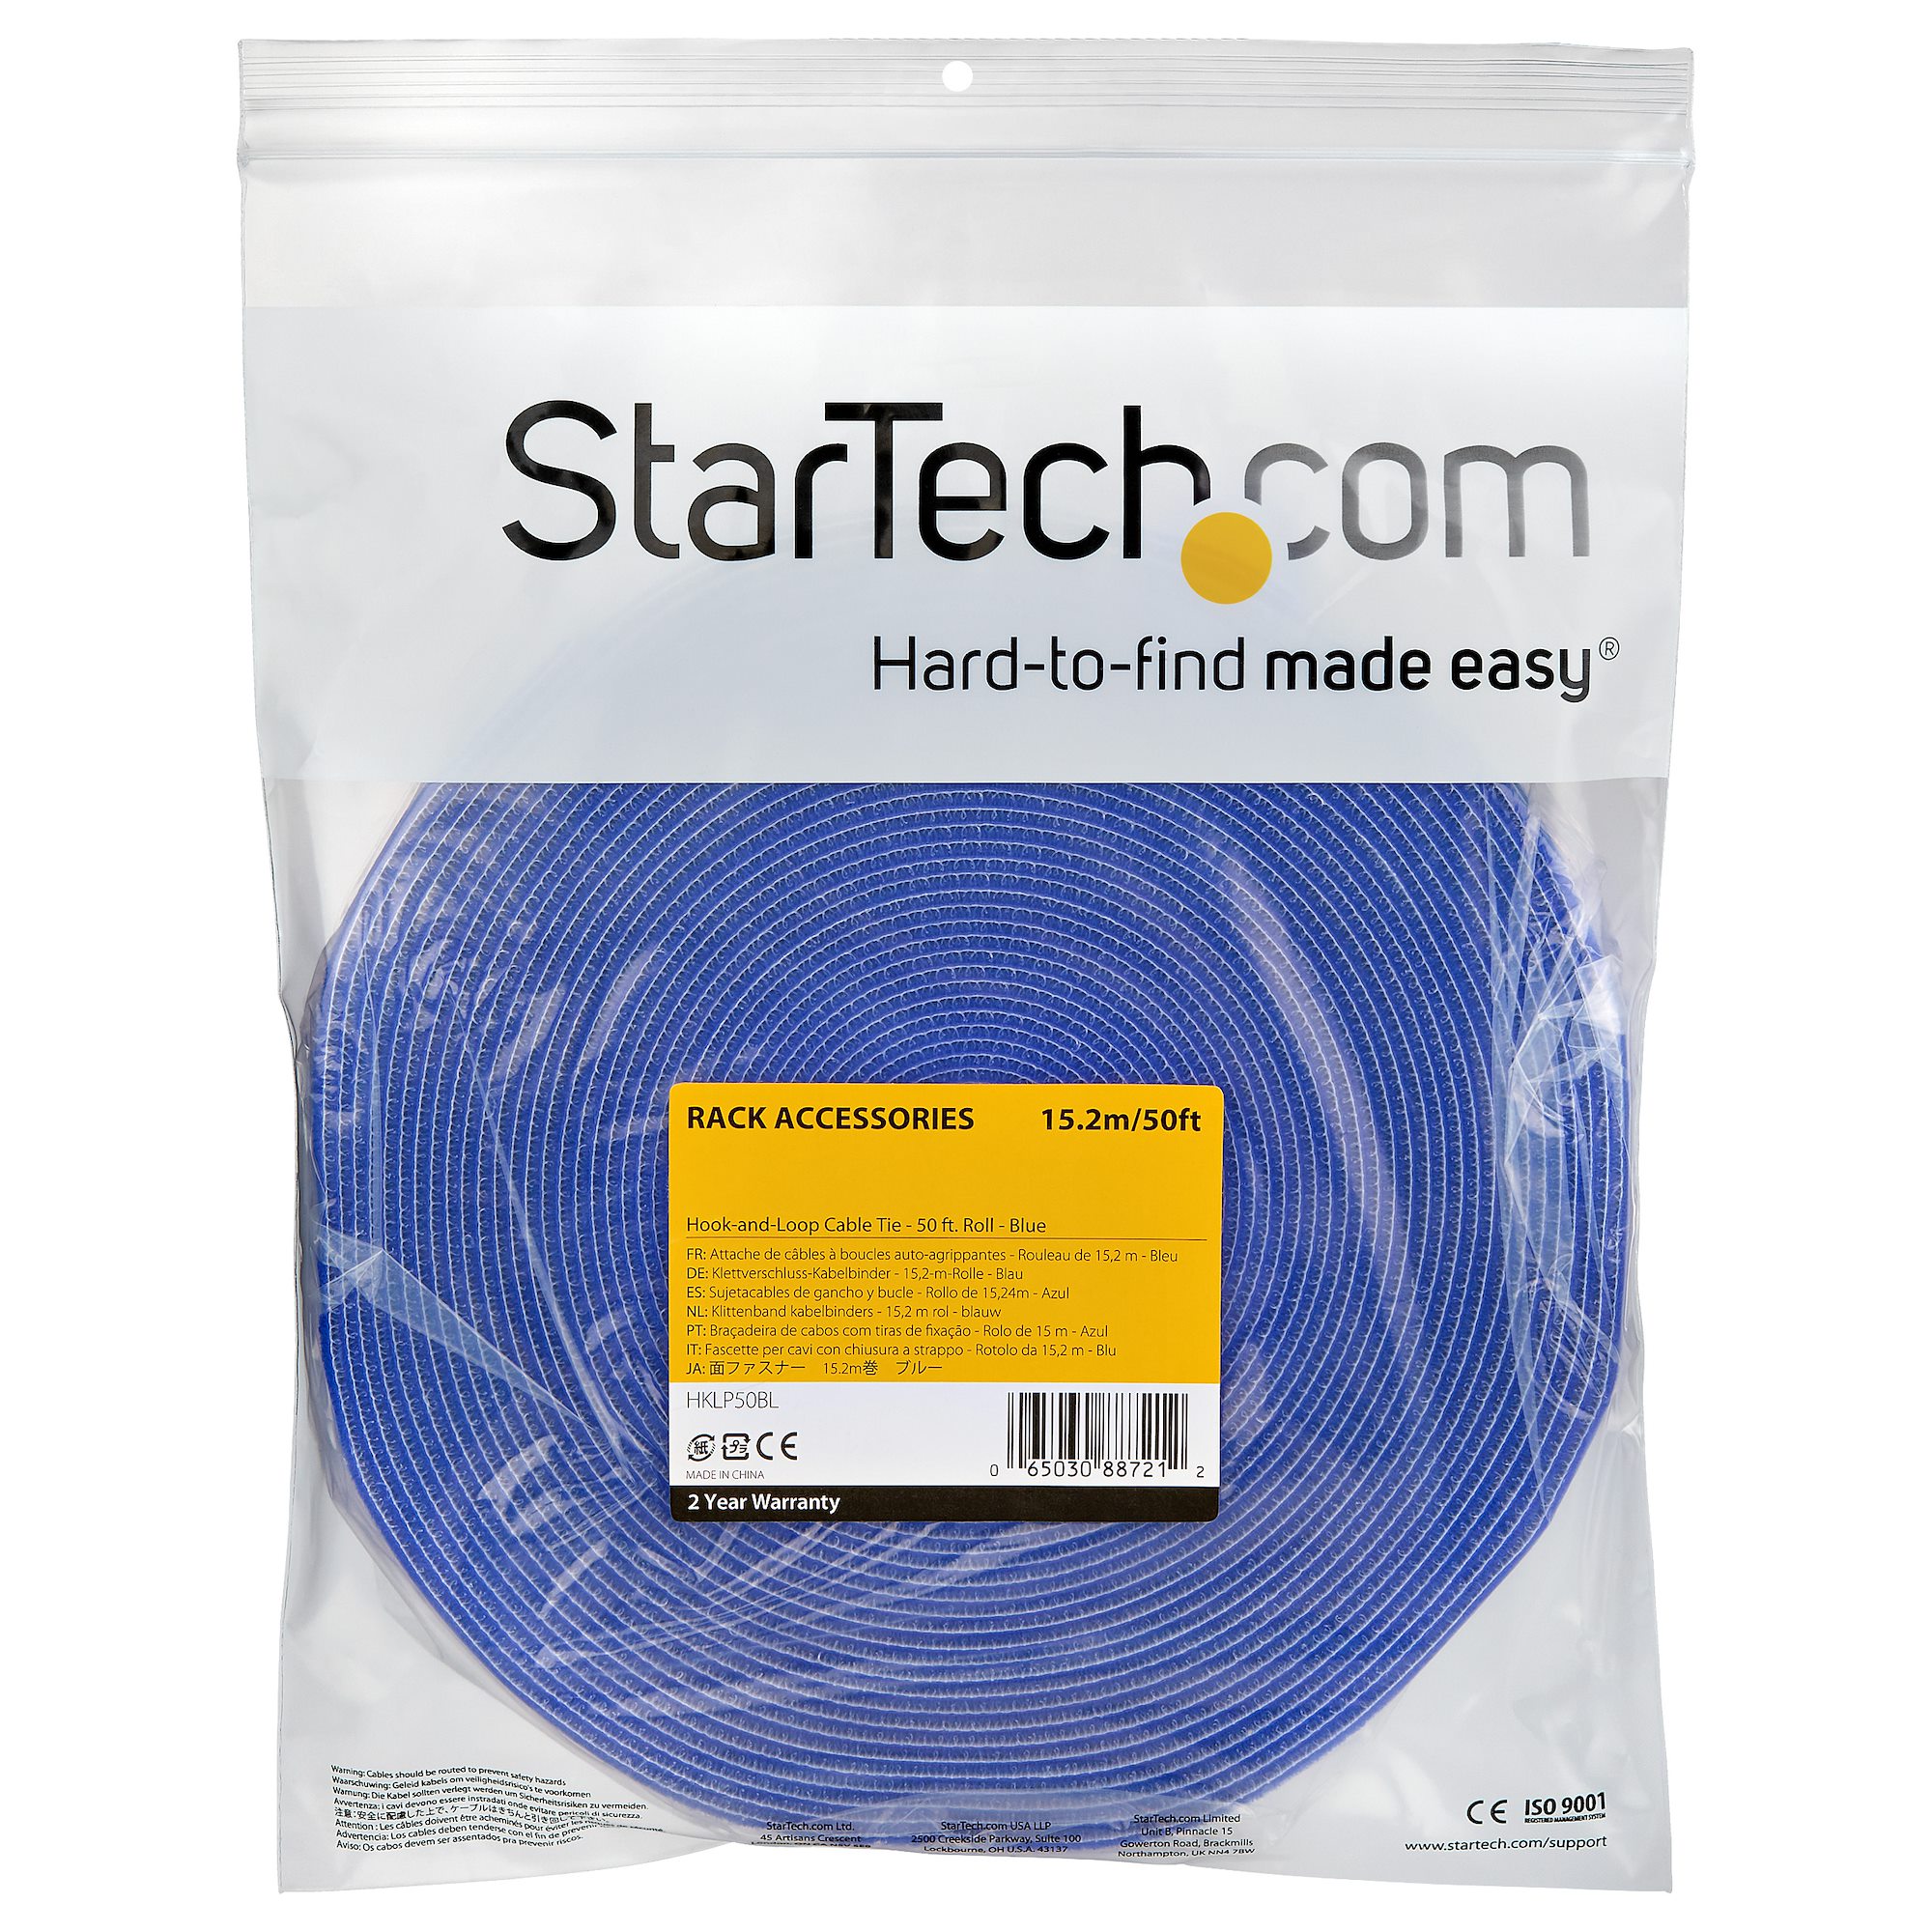 面ファスナー 15.2m ブルー ケーブル結束ボアテープ マジックファスナー Cable Tying Solutions StarTech. com 日本